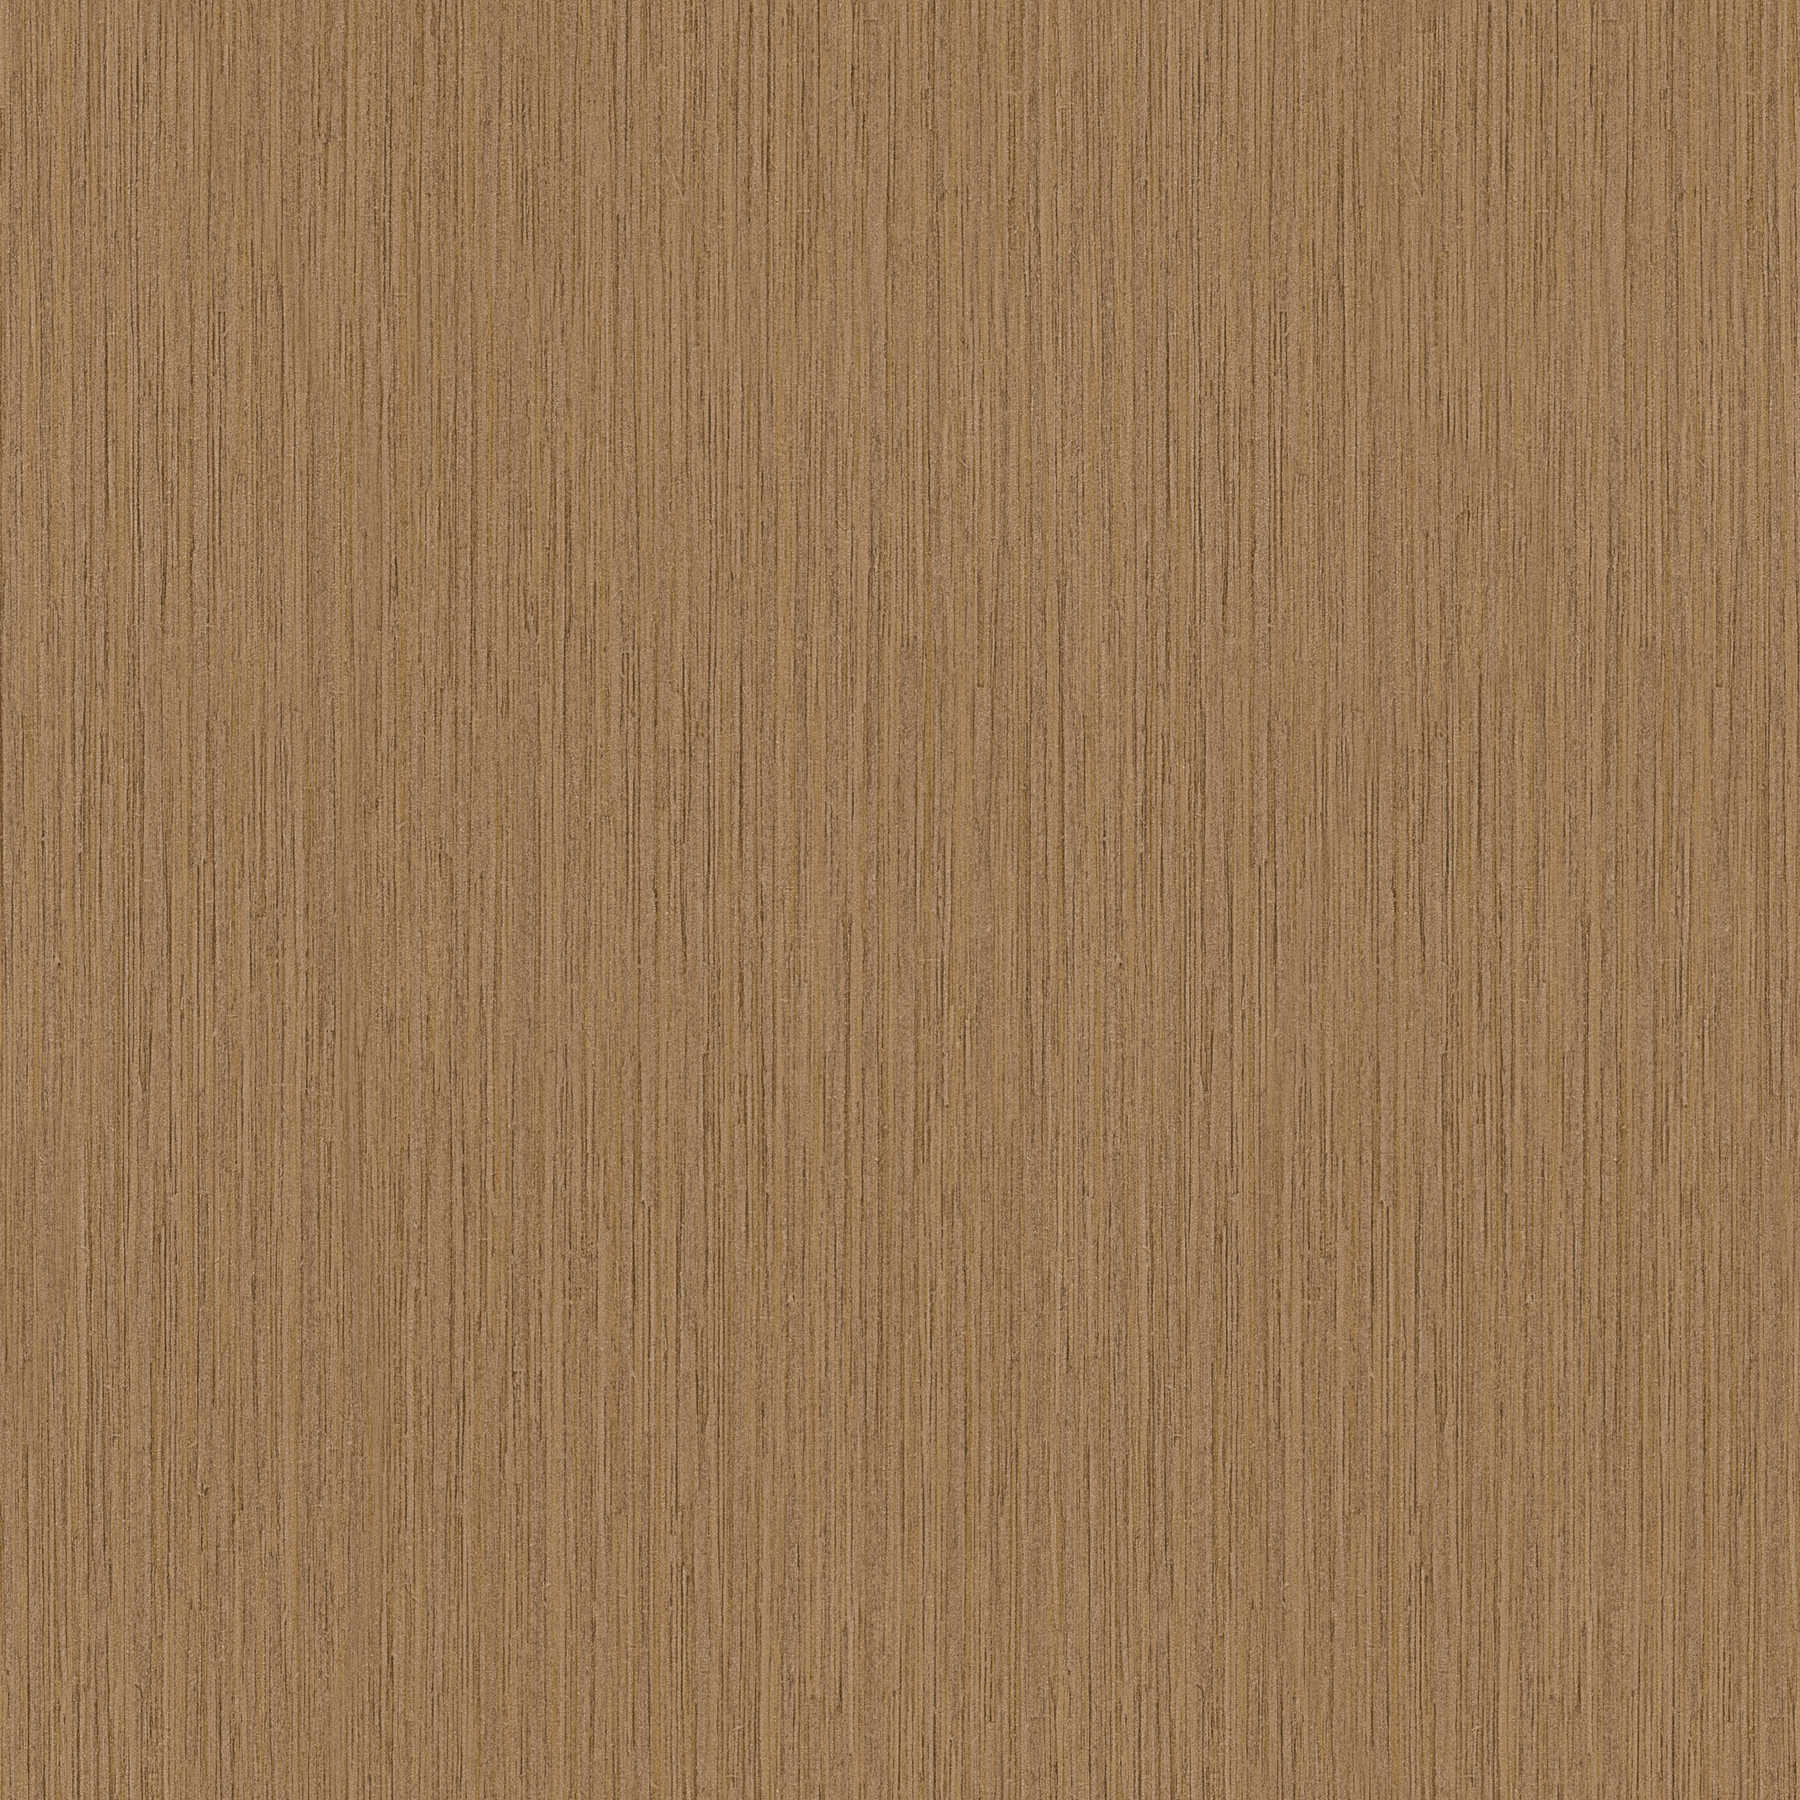 Nature wallpaper wood look dark bamboo - brown
